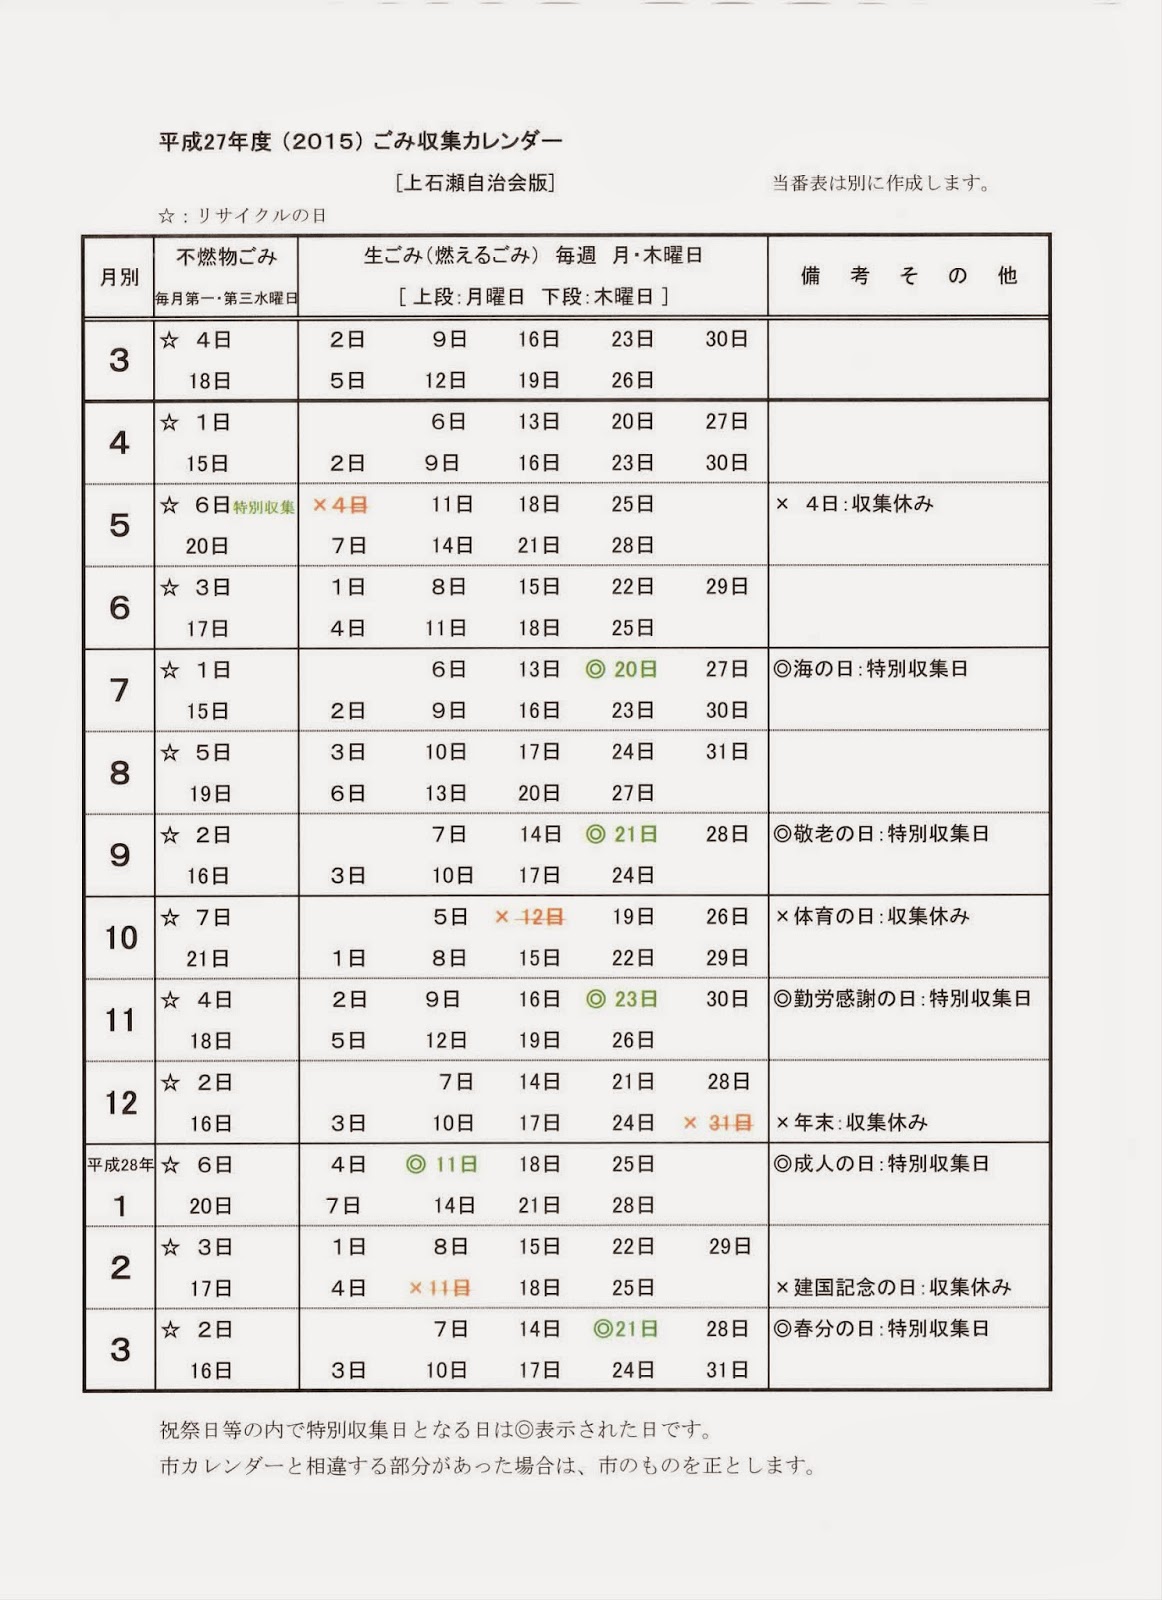 上石瀬自治会 上石瀬 平成27年度 版 ごみ収集カレンダー